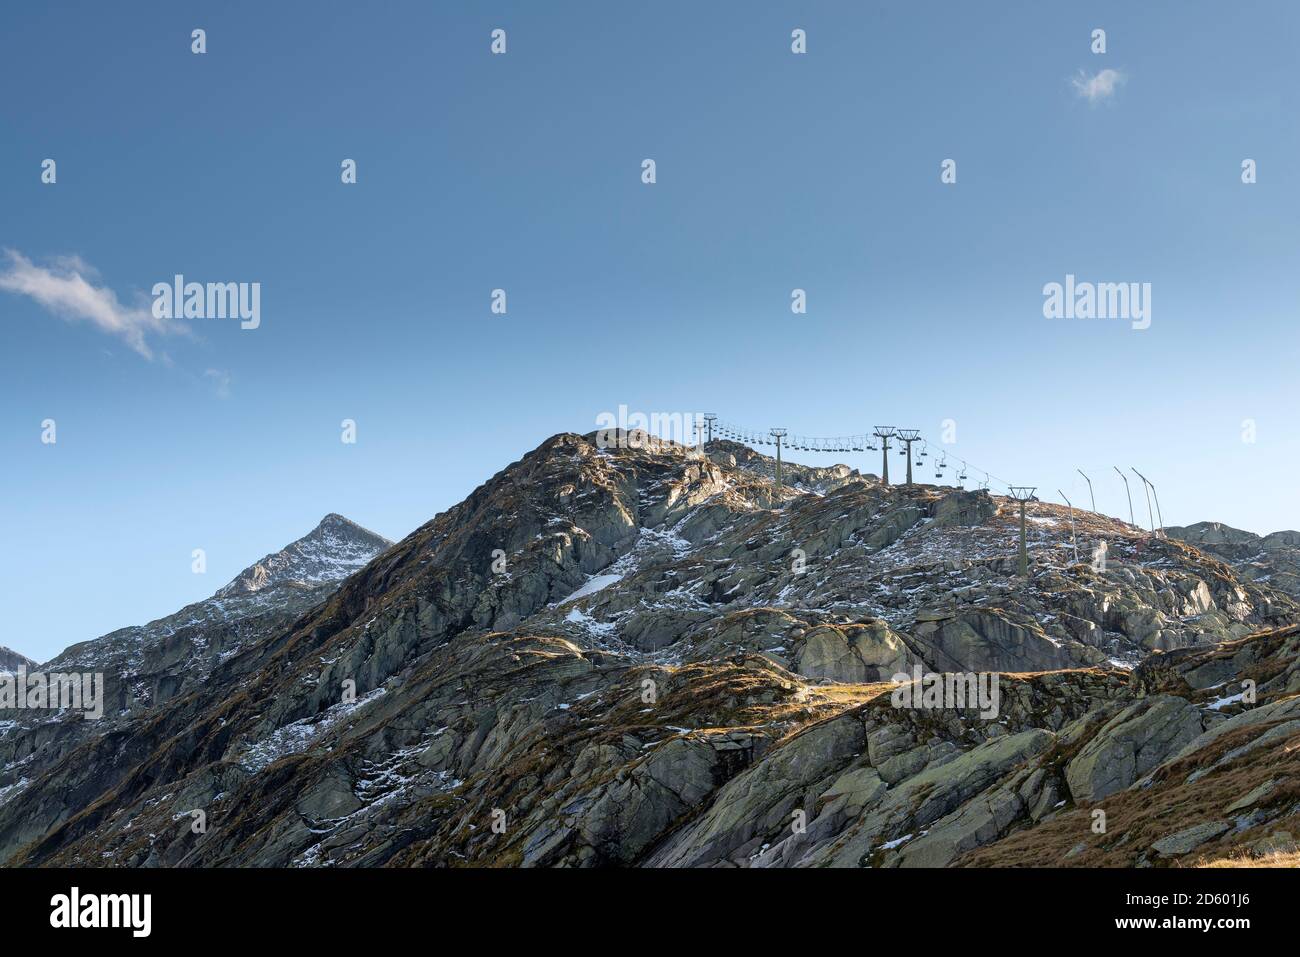 Austria, Stato di Salisburgo, Pinzgau, seggiovia nel comprensorio sciistico Weisssee Gletscherwelt Foto Stock